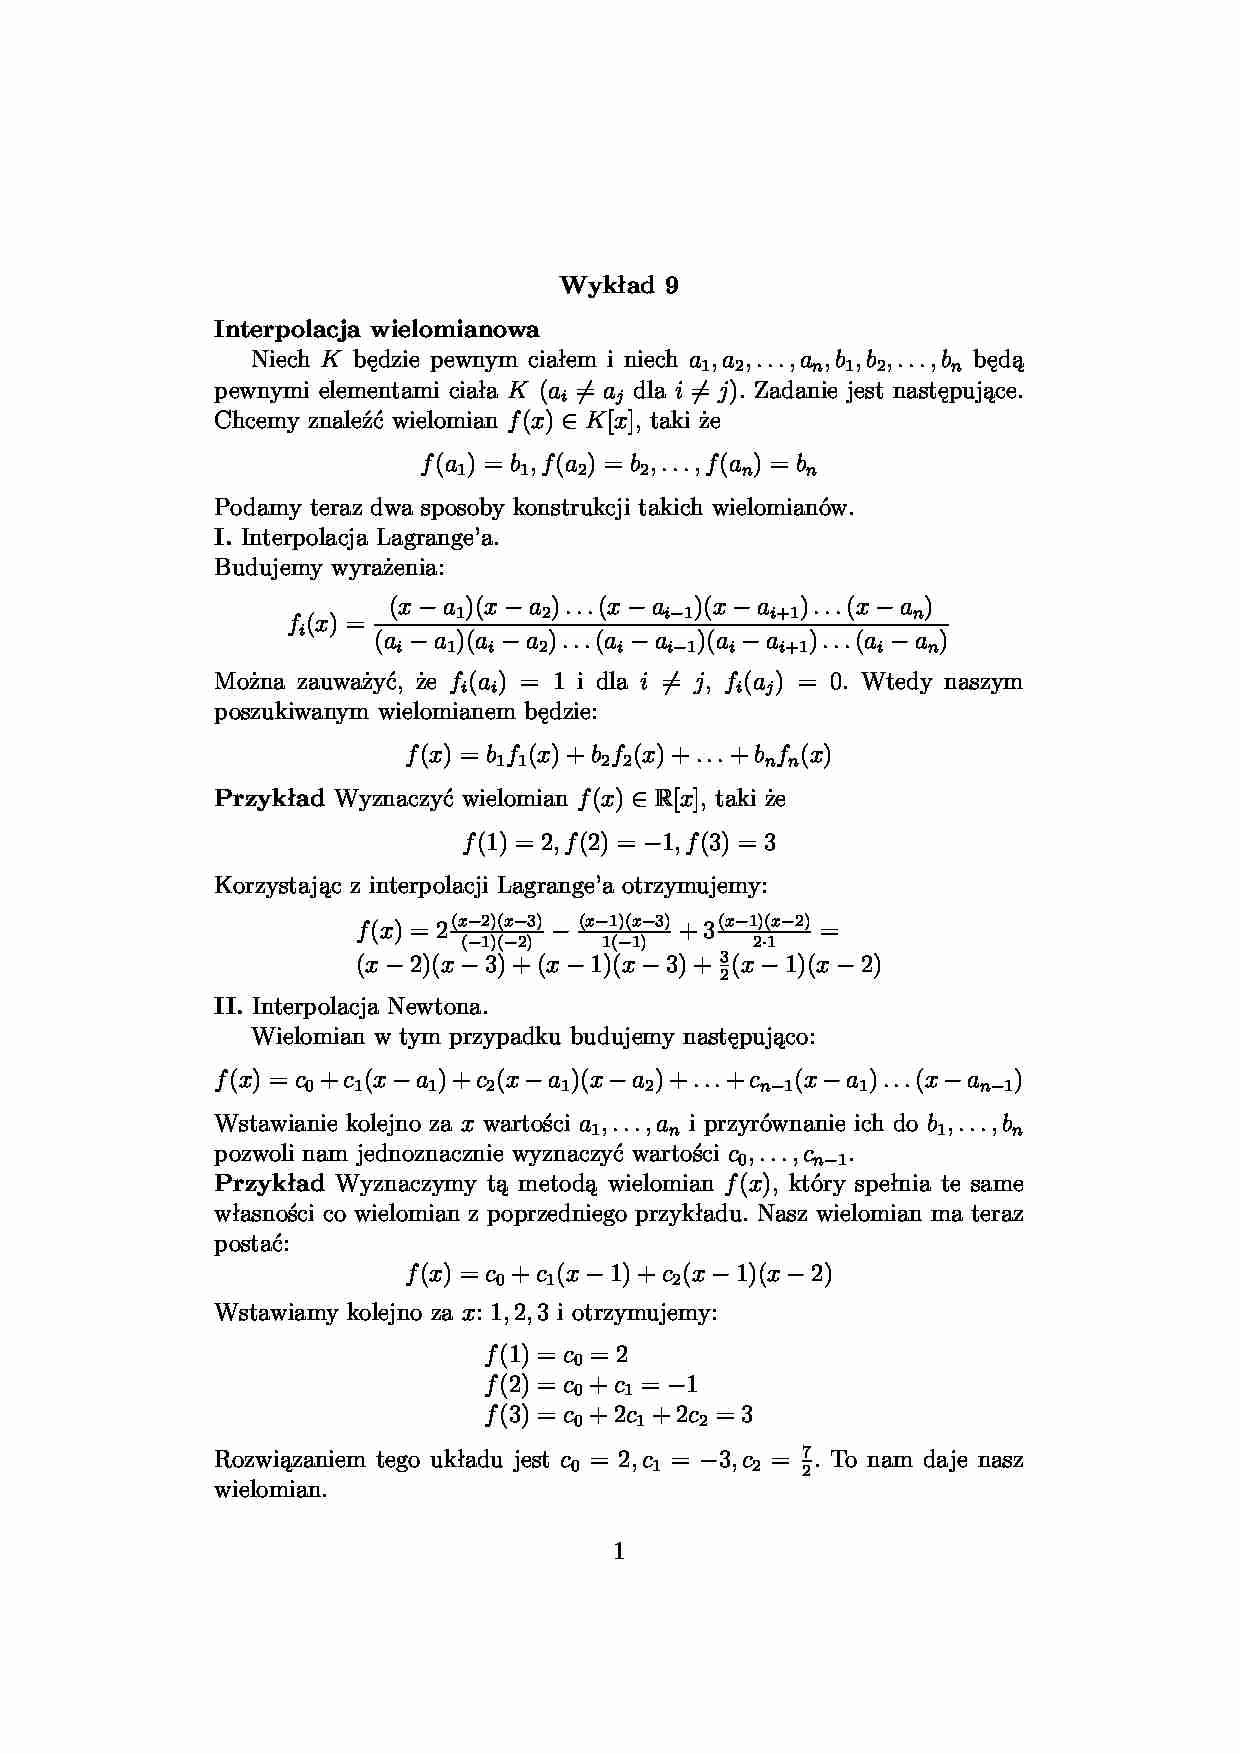 interpolacja wielomianowa -  Wykład 9 - strona 1